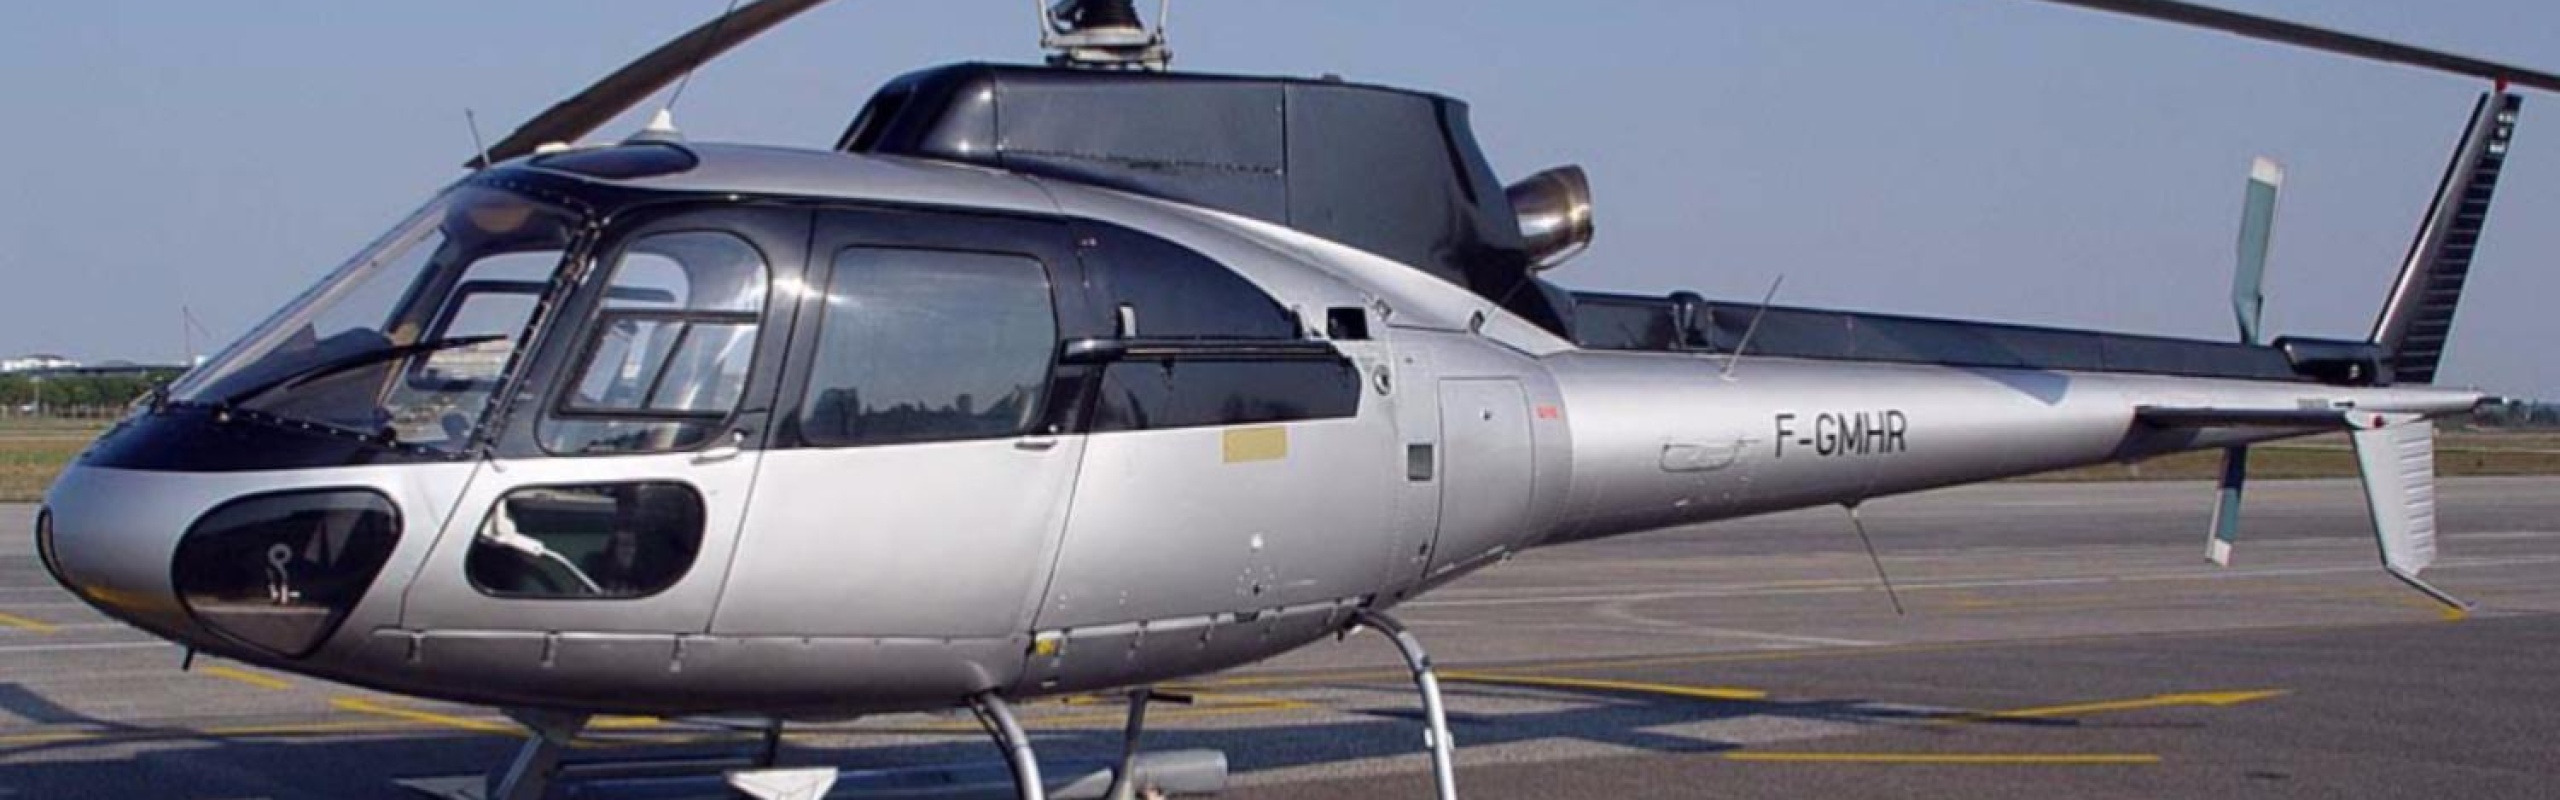 Воздушный трансфер - аренда вертолета